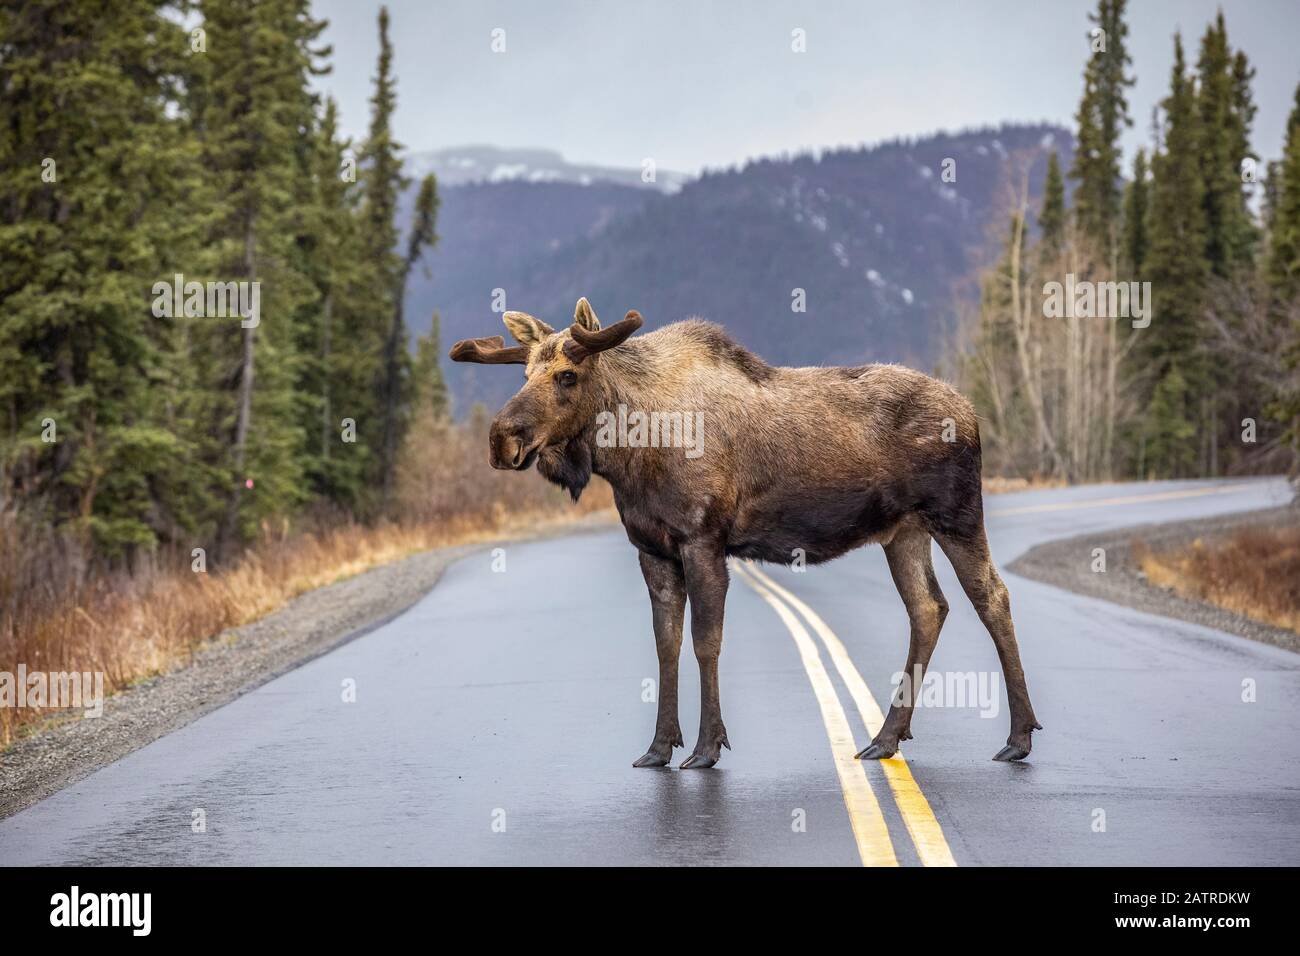 Un orignal taureau (Alces alces) avec des bois encore en velours s'arrête au milieu de la route du parc, Parc national et réserve Denali, intérieur de l'Alaska Banque D'Images